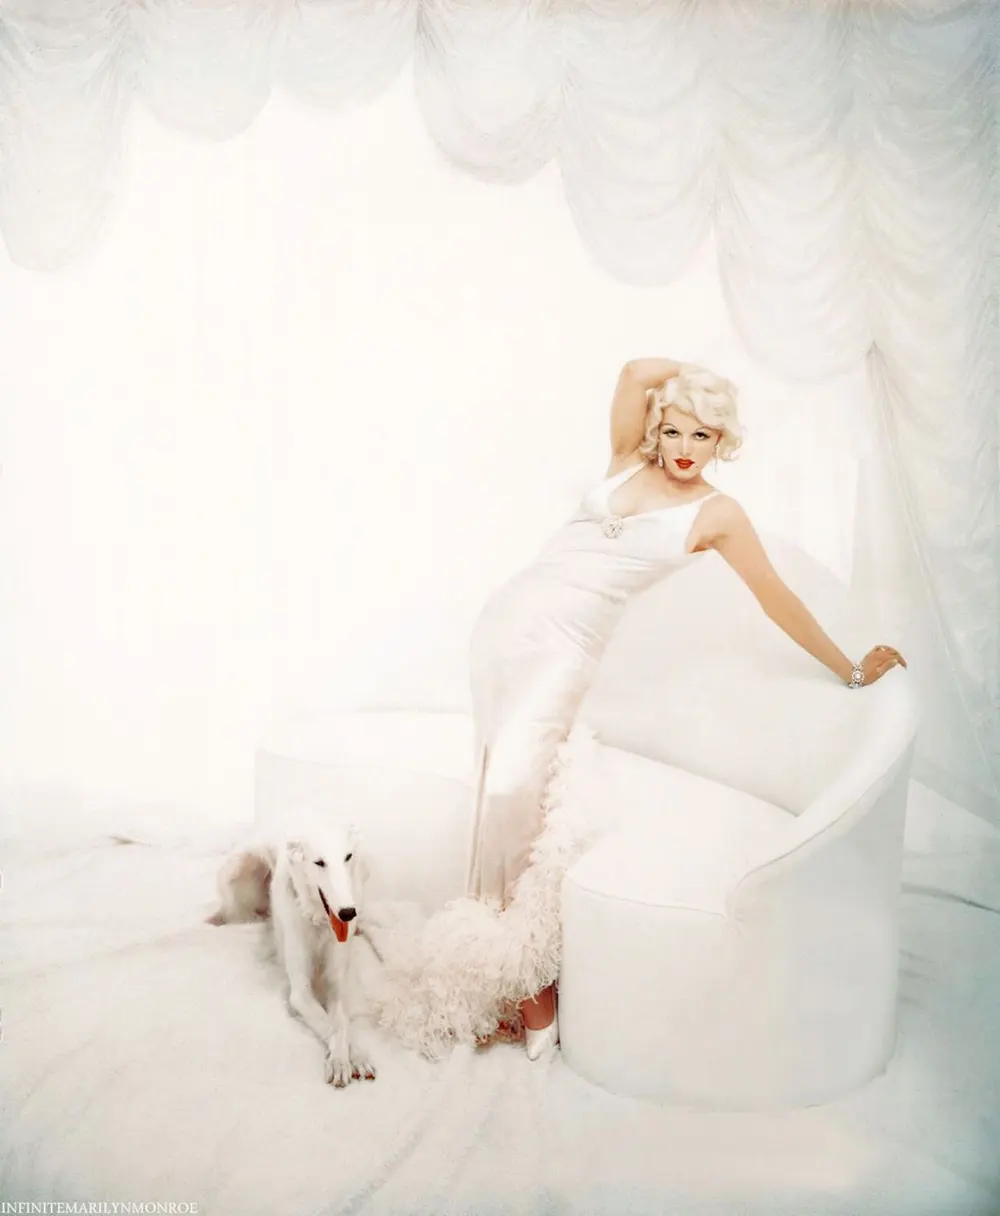 Marilyn Monroe as the Fabulous Enchantresses